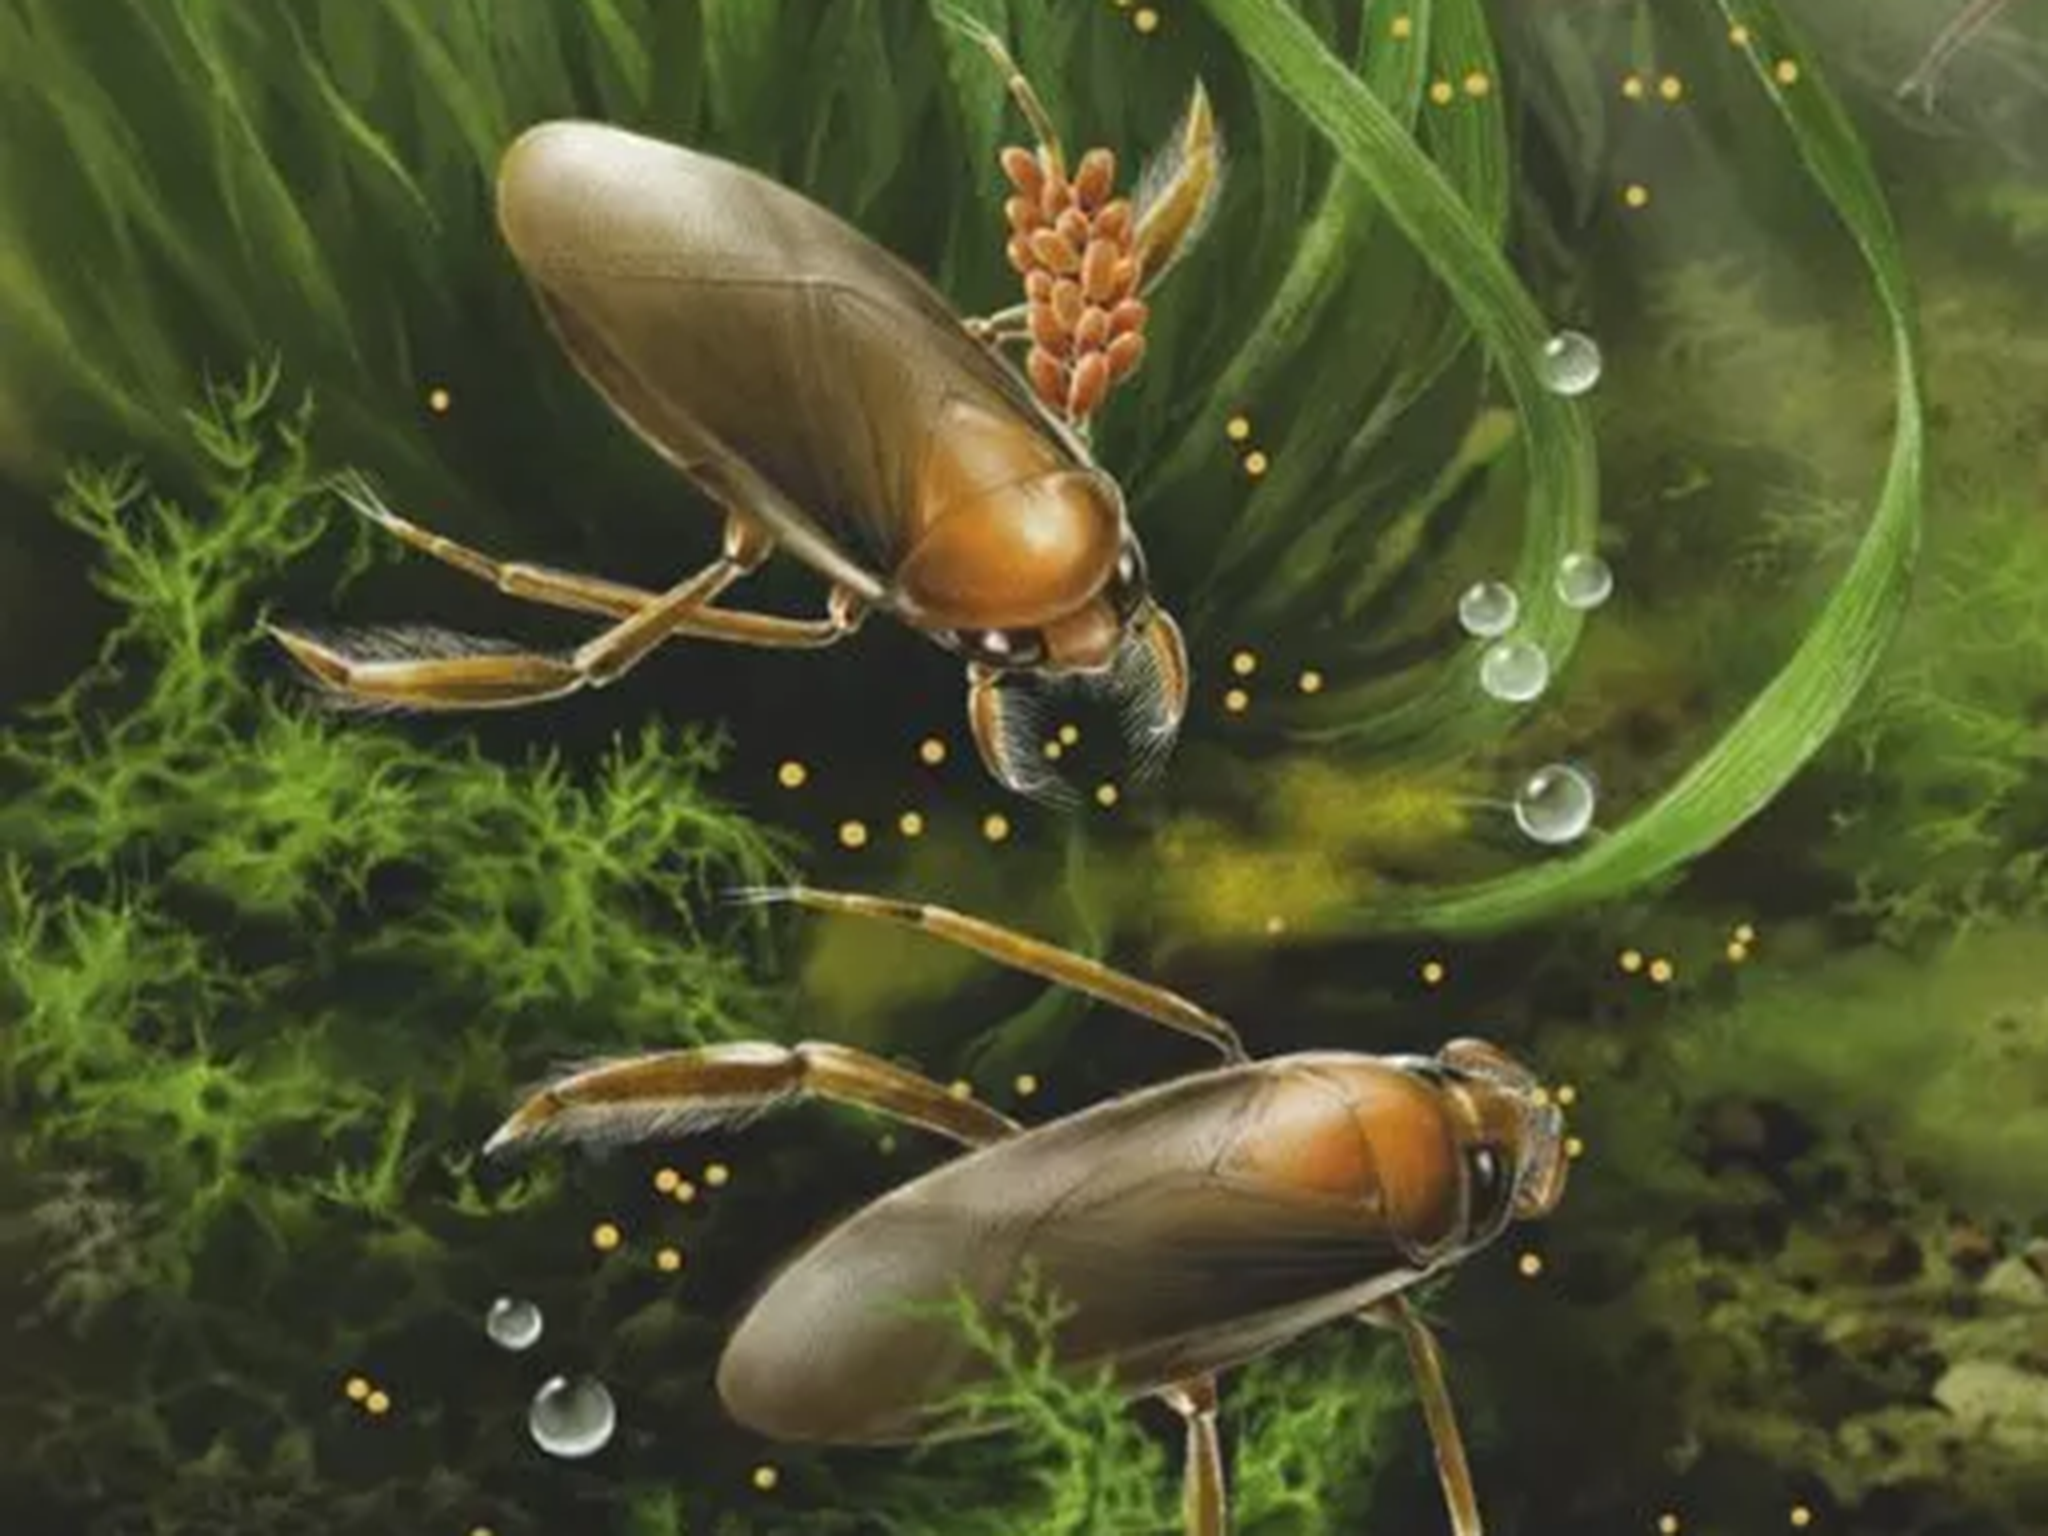 Pre-historic aqua bugs kept their eggs on arm’s length